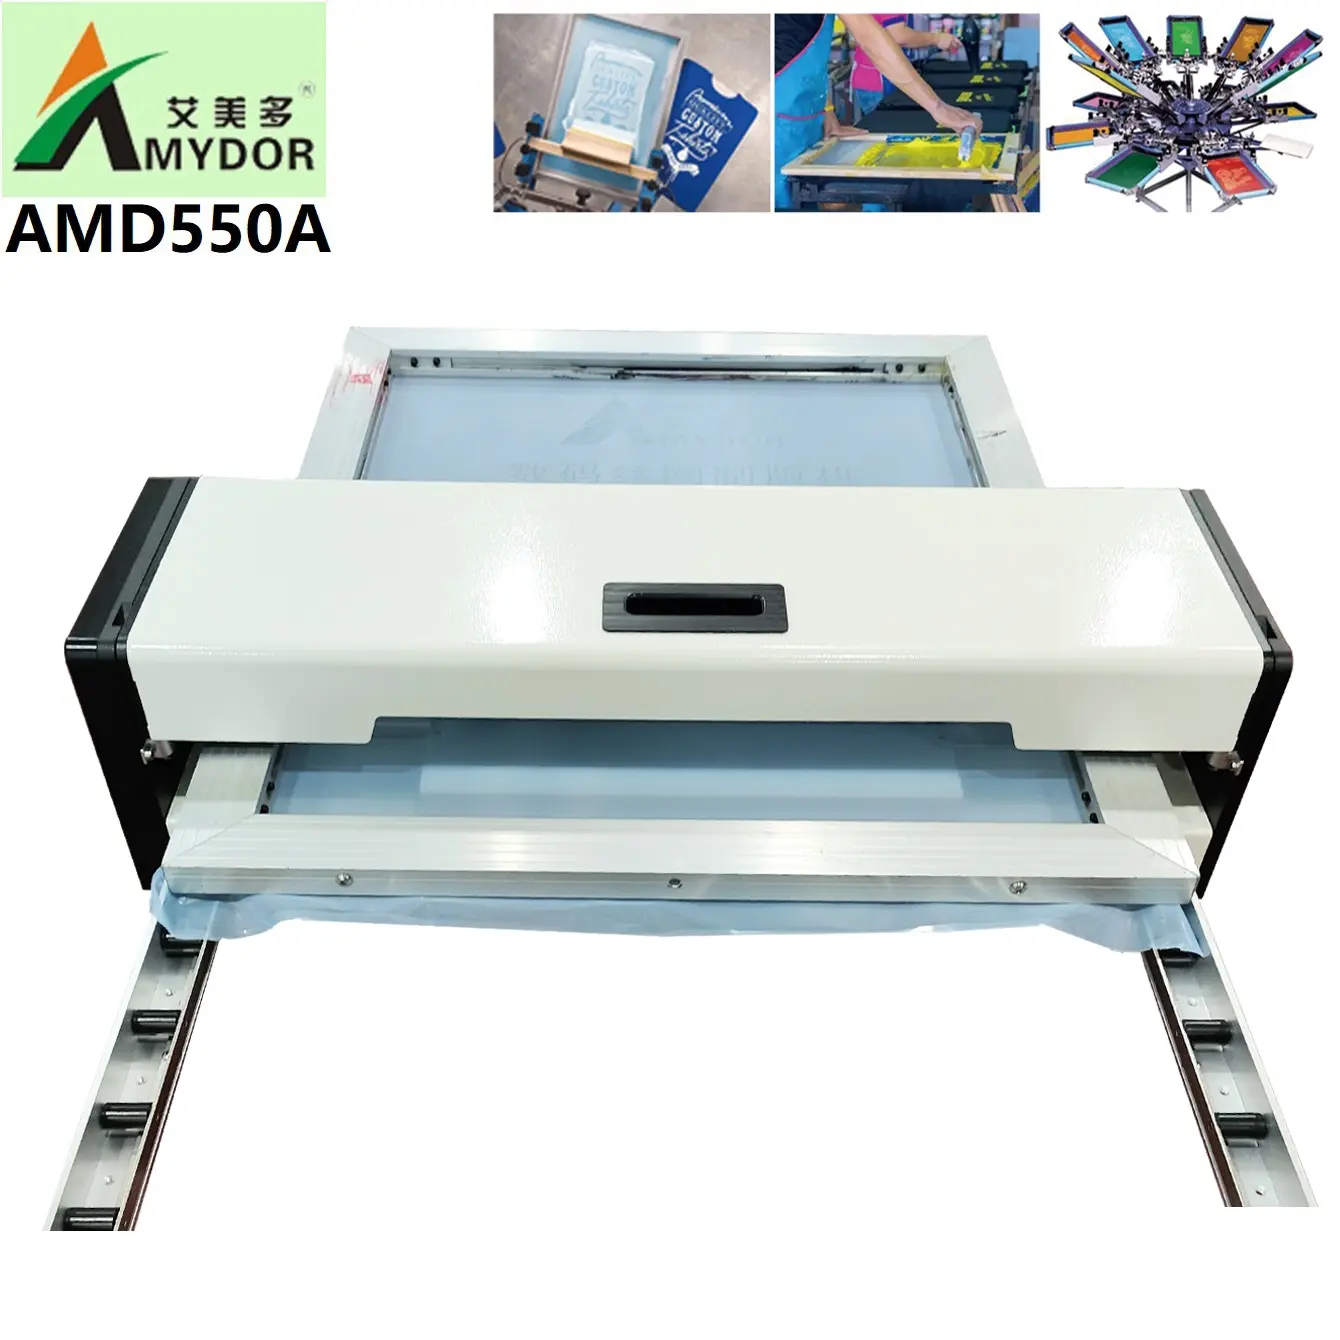 เทคโนโลยีใหม่ เครื่องพิมพ์ซิลค์สกรีนดิจิตอล A3 Amydor AMD550A ไม่ต้องใช้สารเคมีและอิมัลชัน